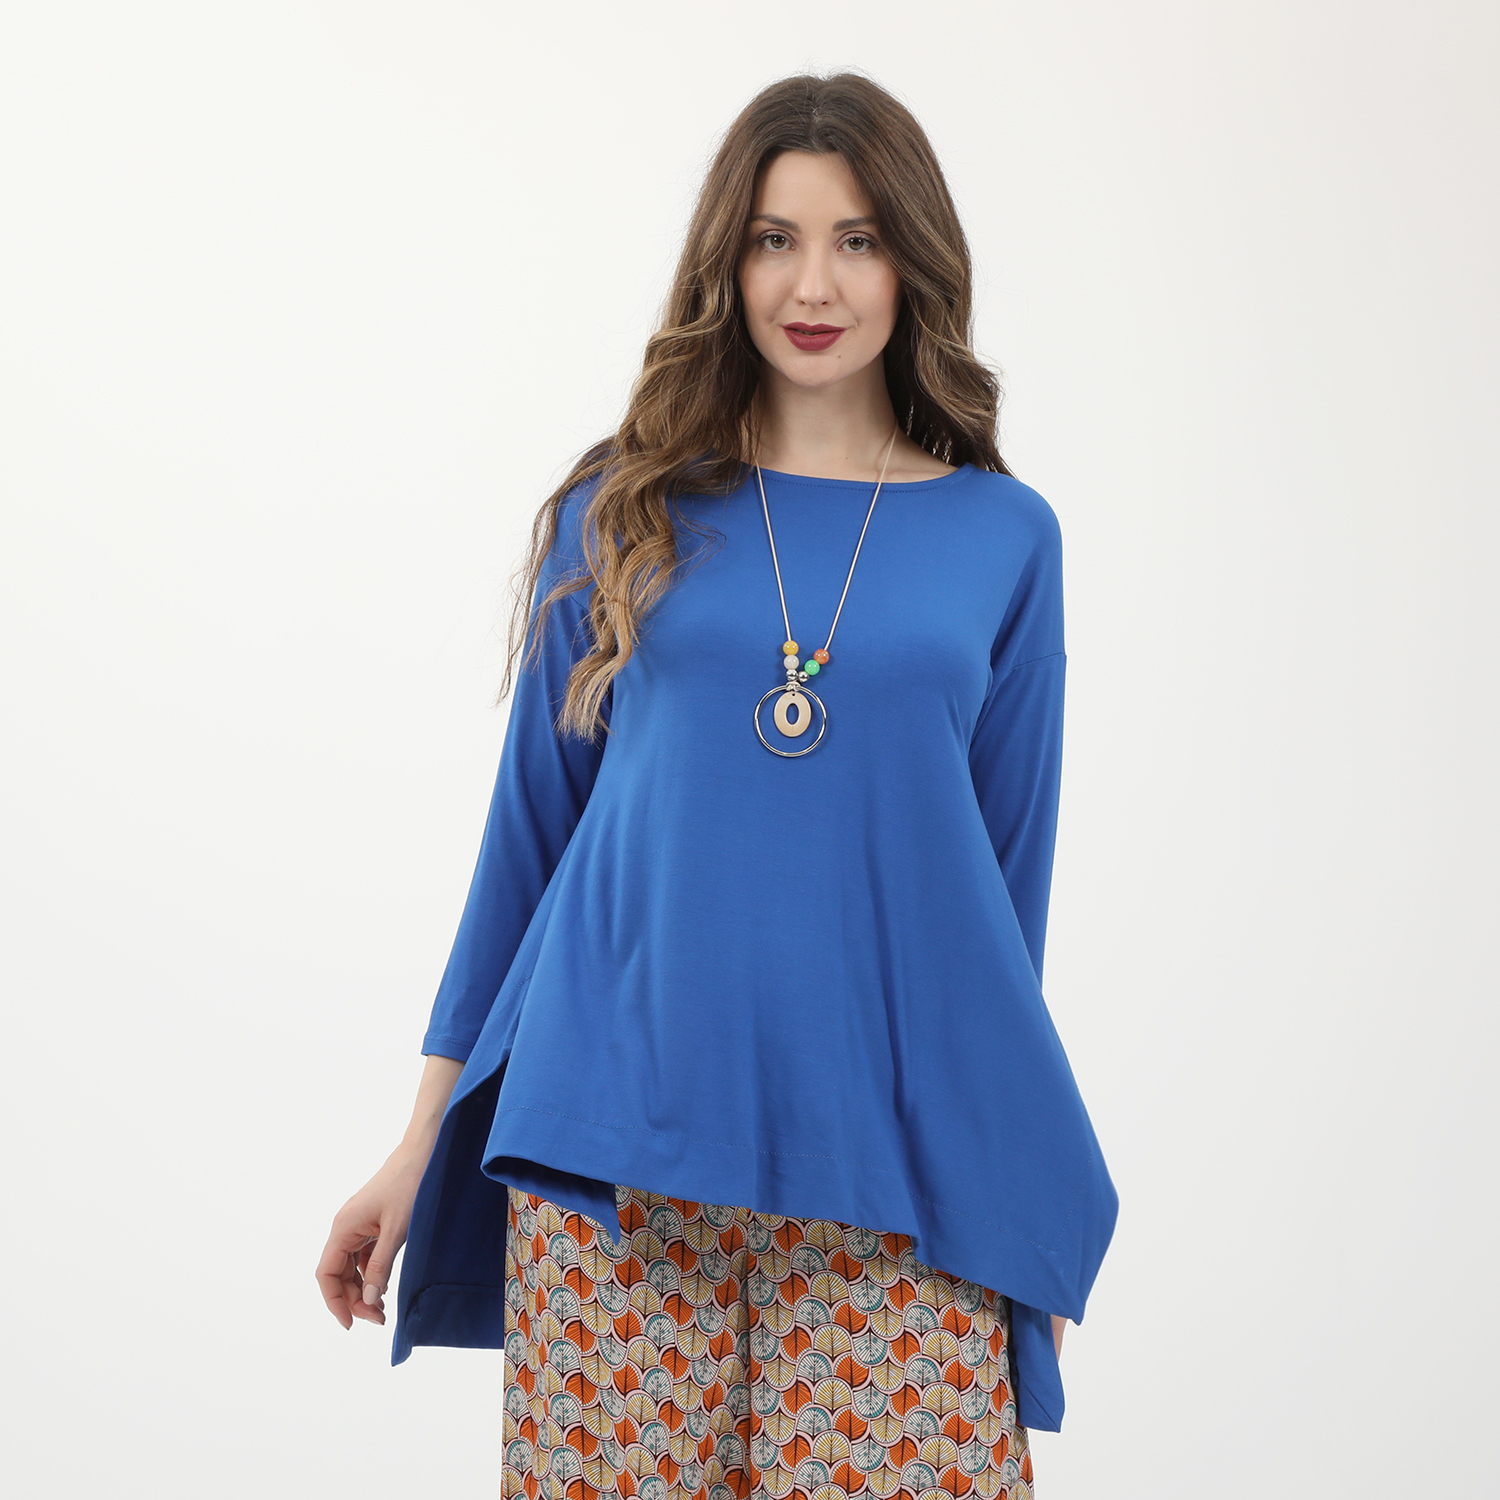 Γυναικεία/Ρούχα/Μπλούζες/Μακρυμάνικες 'ALE - Γυναικεία μακριά μπλούζα 'ALE μπλε